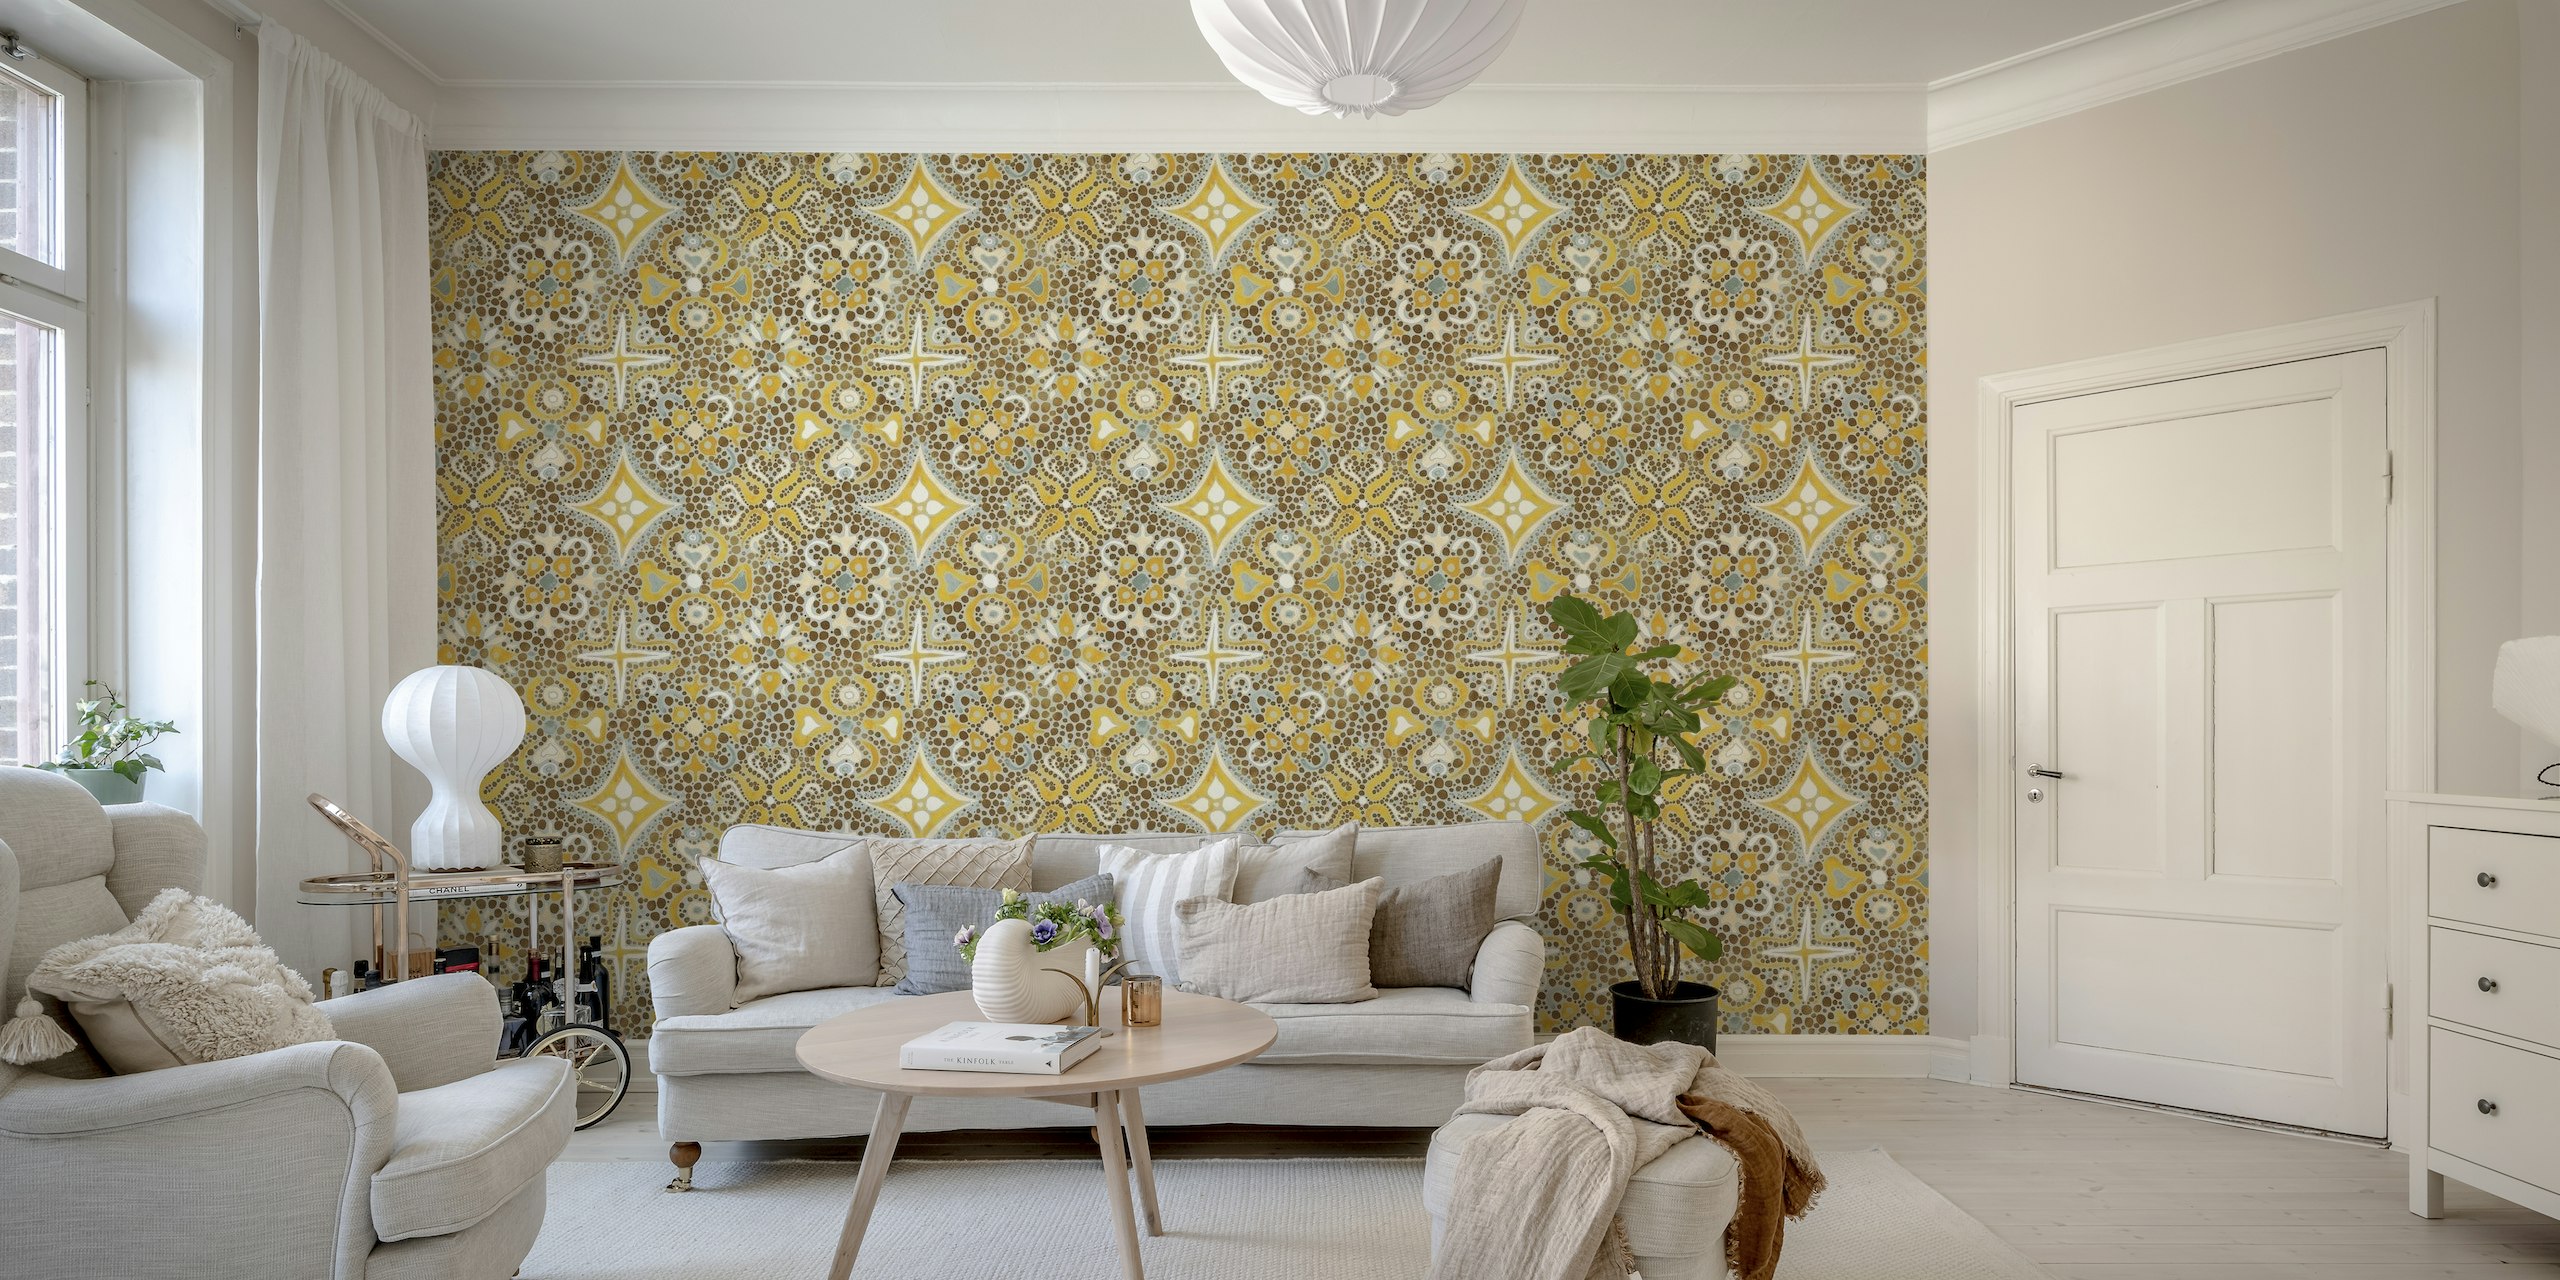 Altes gelbes Mosaik-Wandgemälde mit komplizierten maximalistischen Mustern